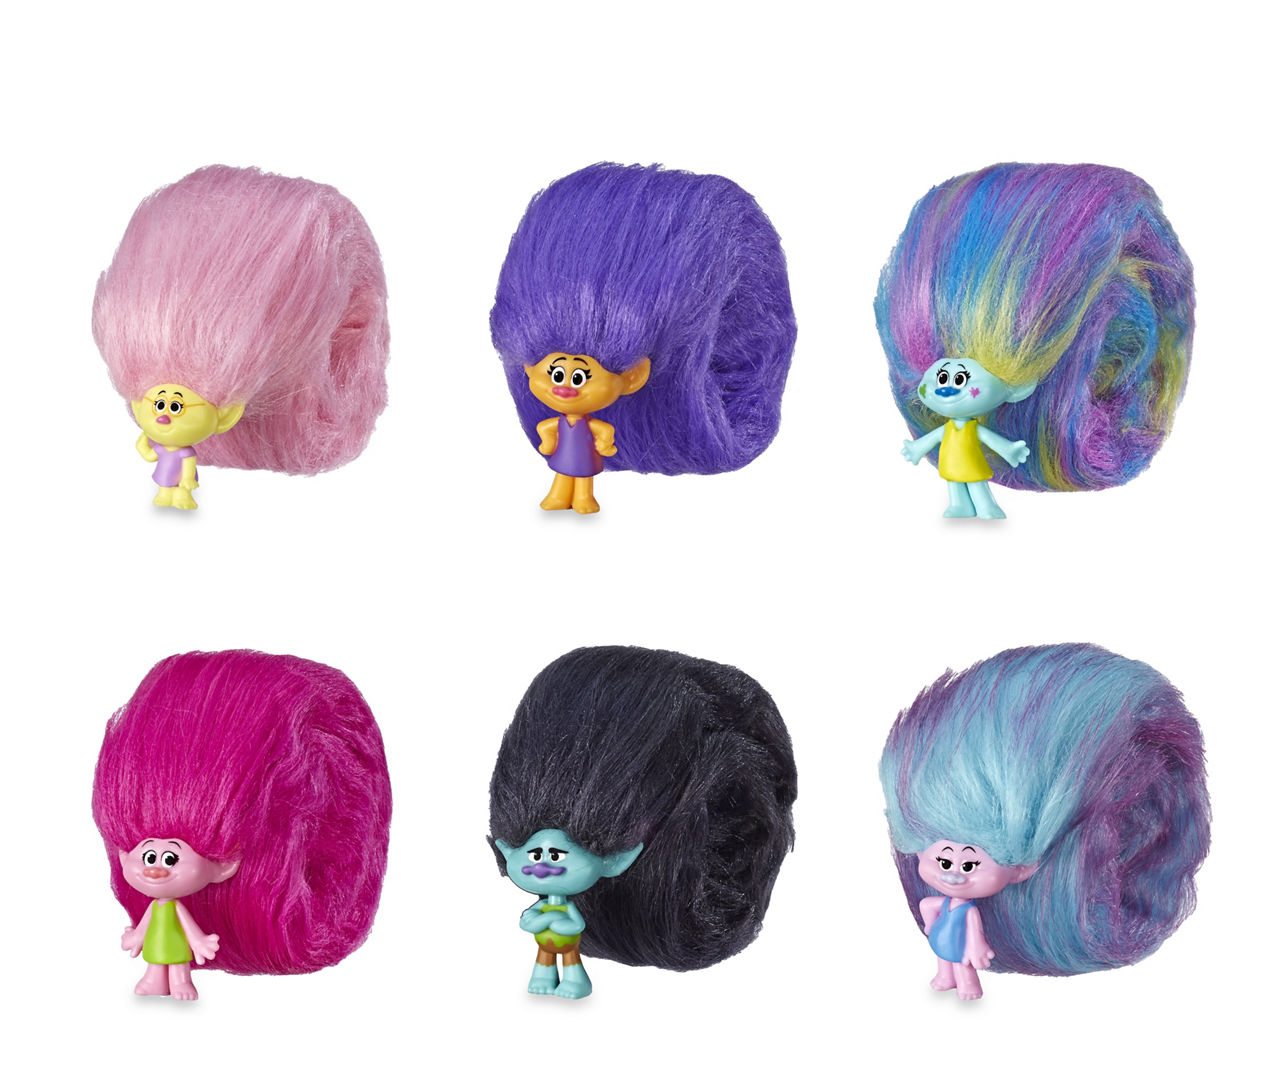 Trolls Hair Huggers Series 1 10 Blind Bag Figures Toy Unboxing